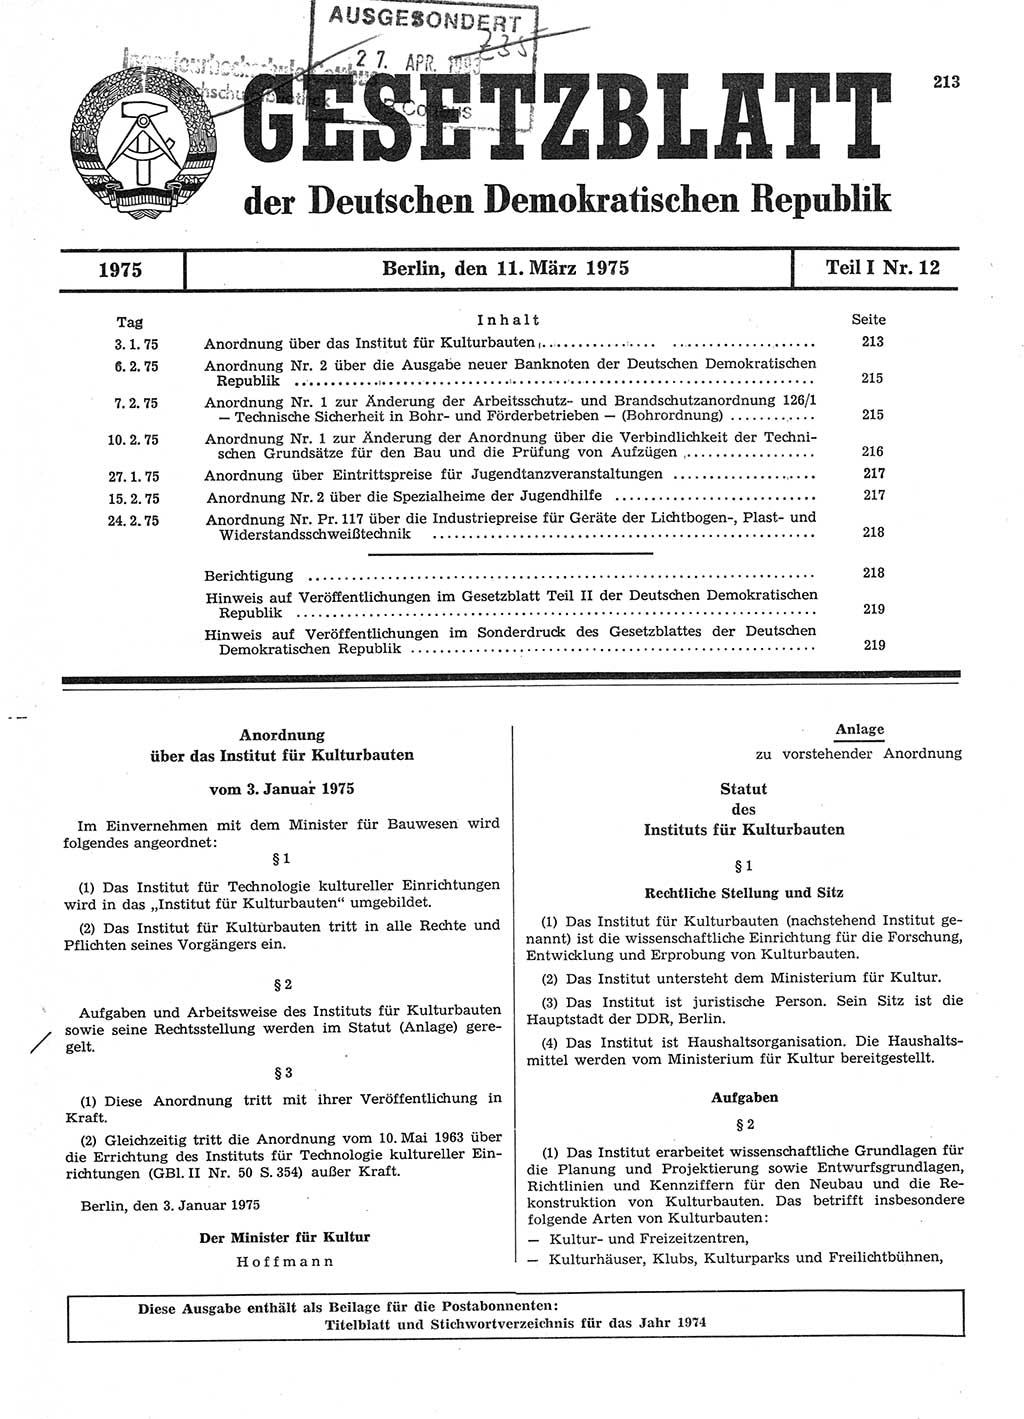 Gesetzblatt (GBl.) der Deutschen Demokratischen Republik (DDR) Teil Ⅰ 1975, Seite 213 (GBl. DDR Ⅰ 1975, S. 213)